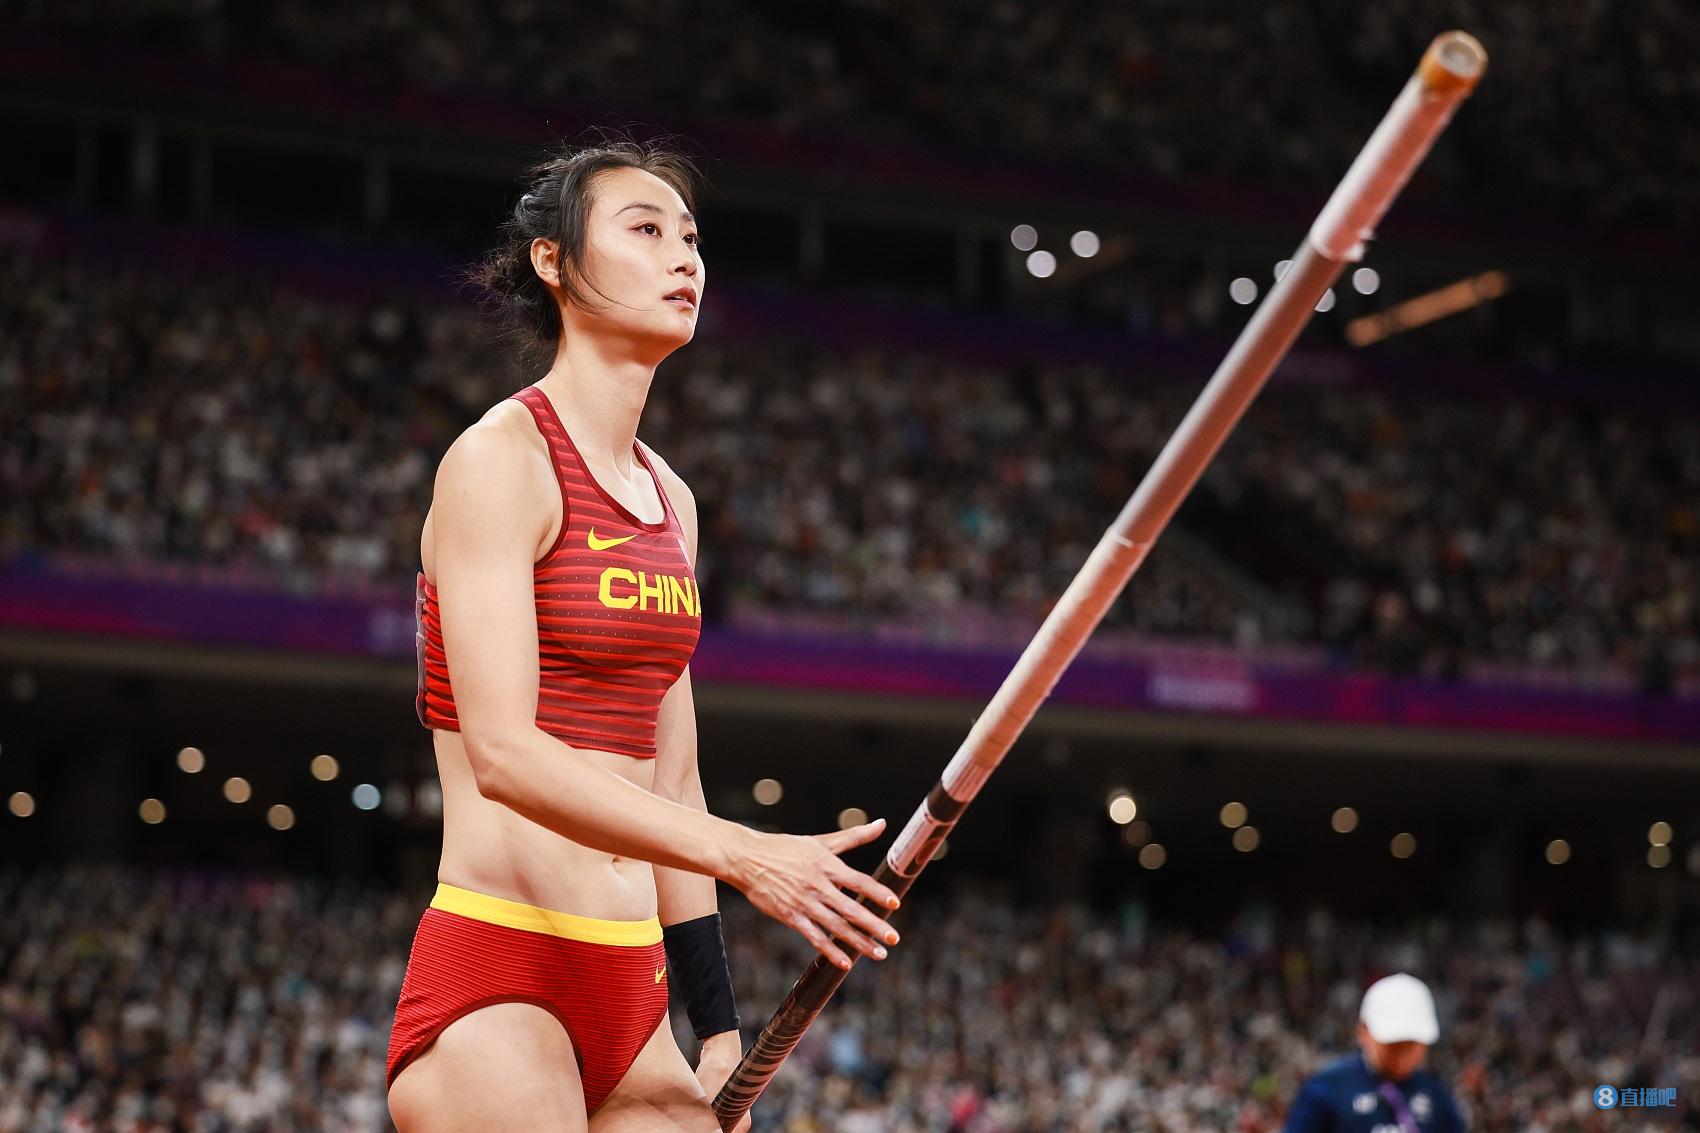 05女子撑竿跳高中国选手李玲打破亚运会纪录夺金牛春格摘铜